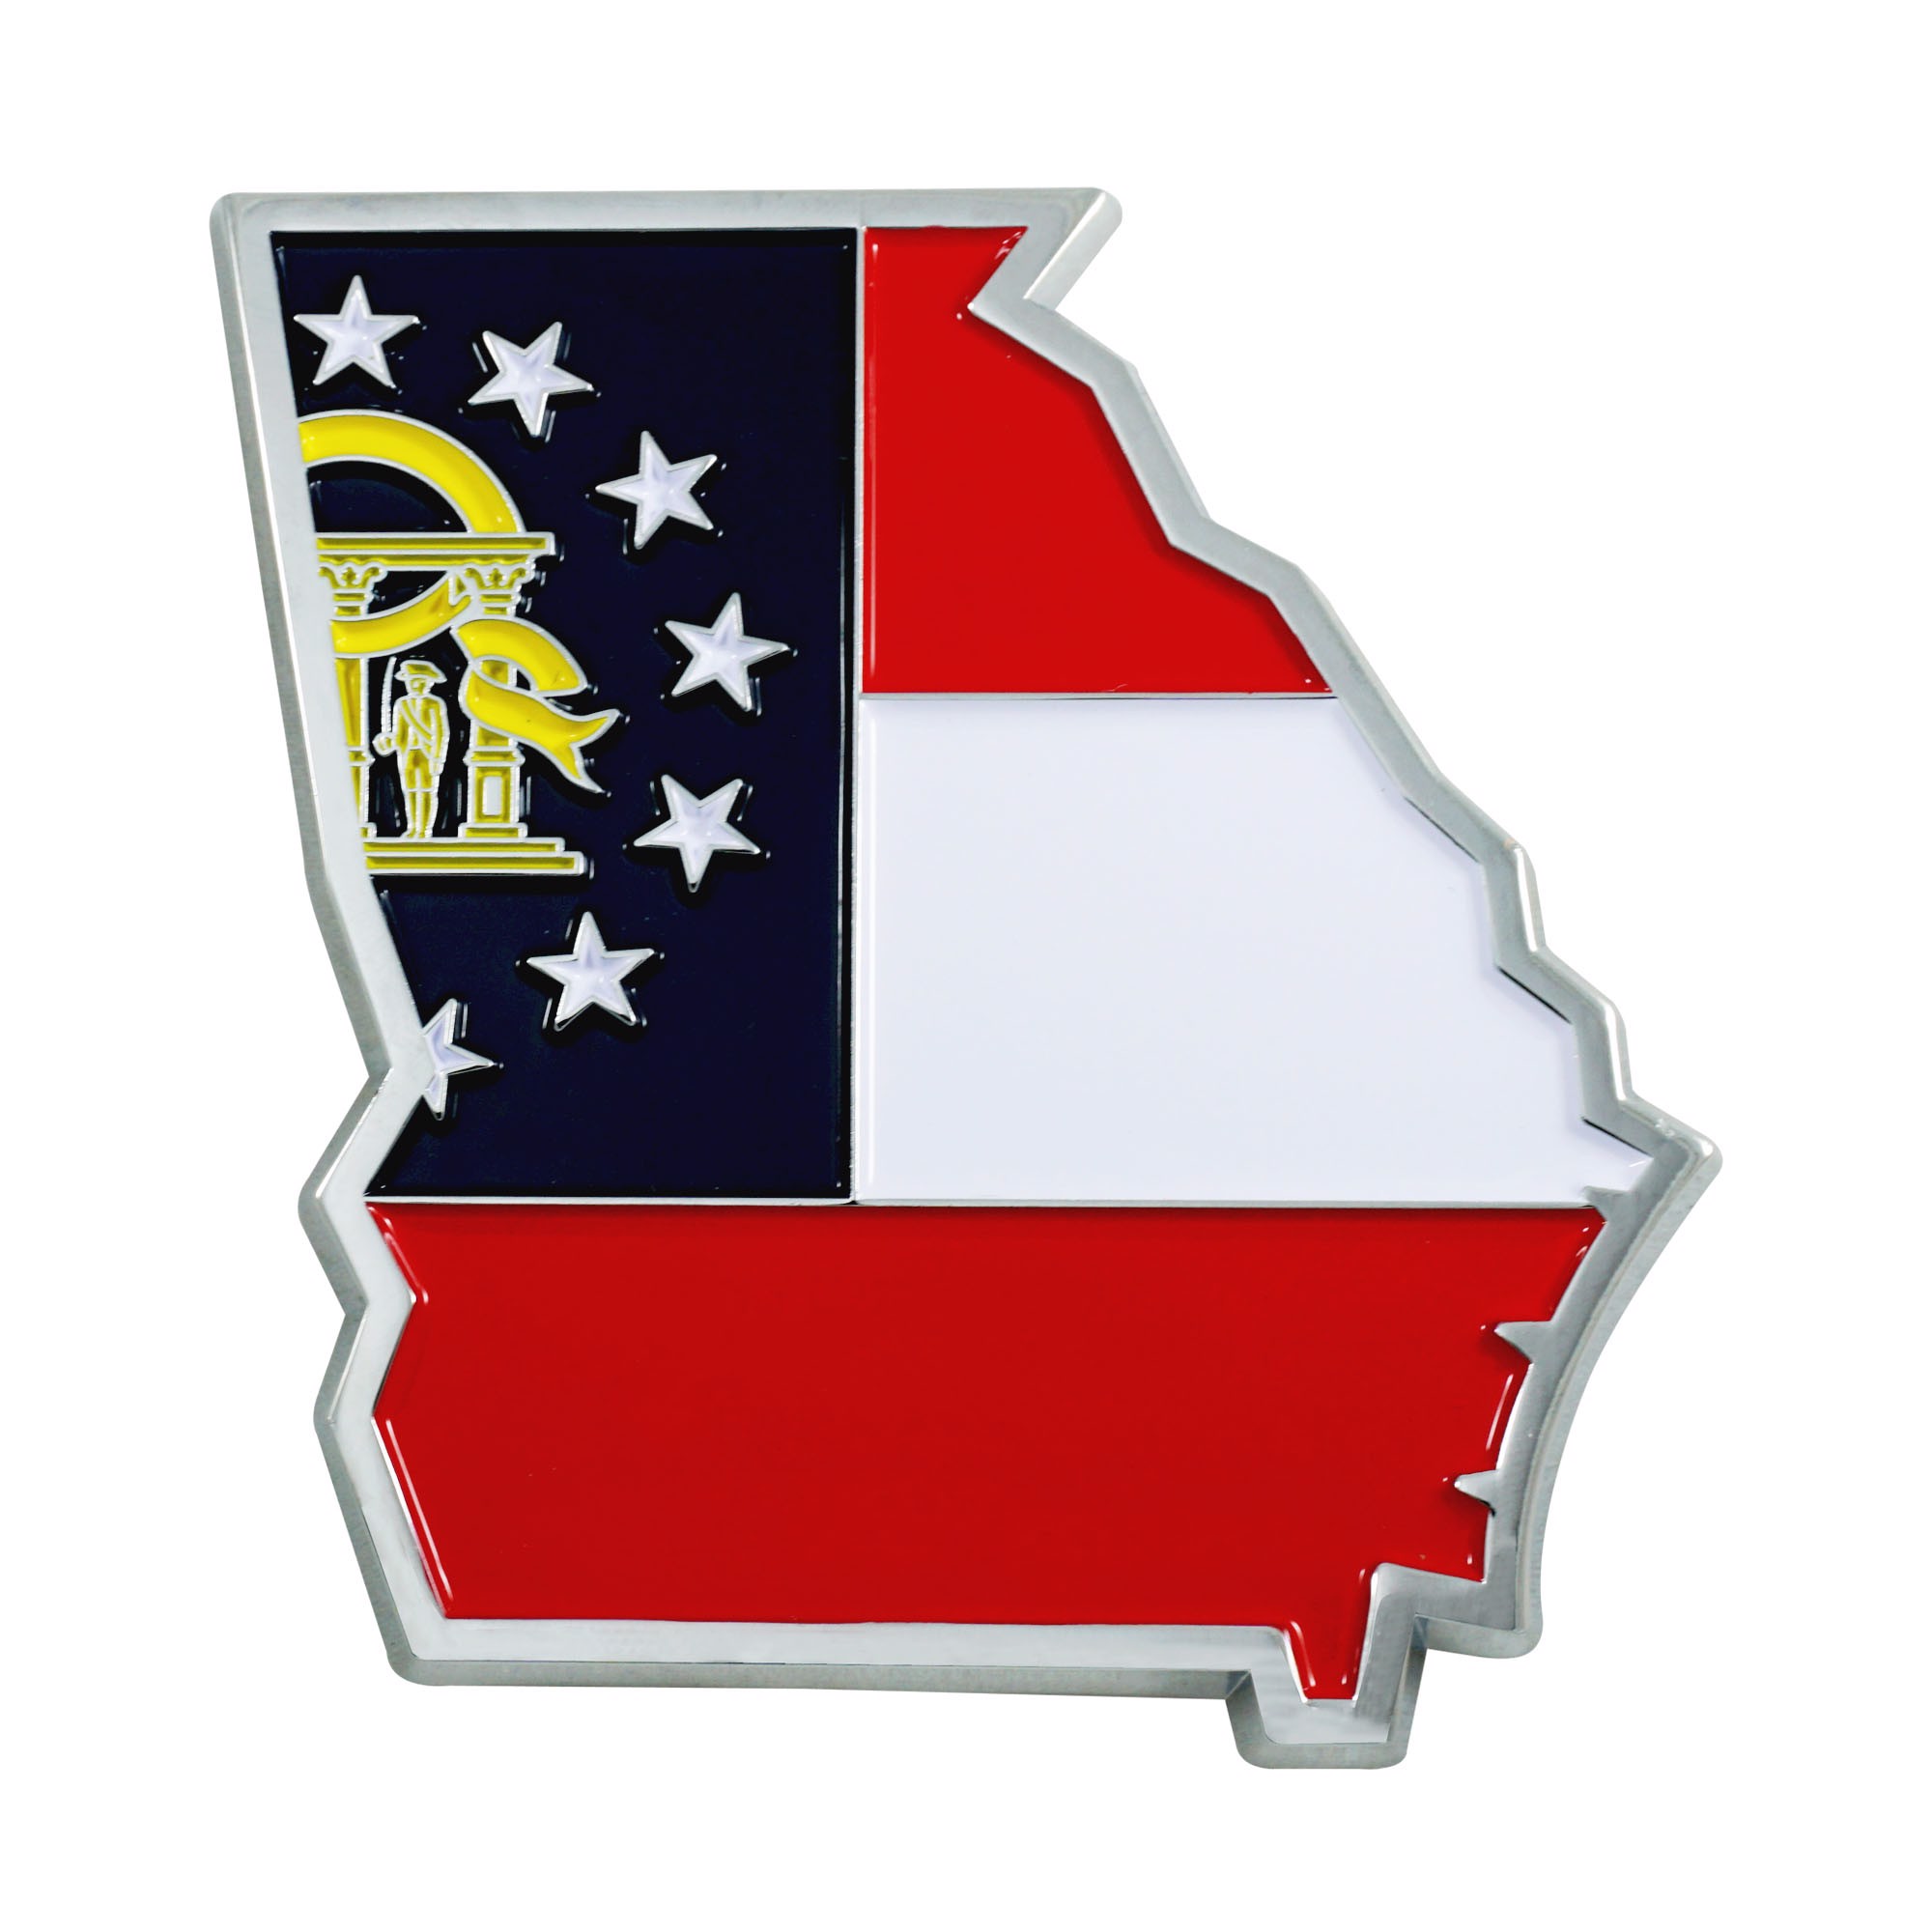 FANMATS St. Louis Cardinals MLB Color Emblem Metal Emblem at